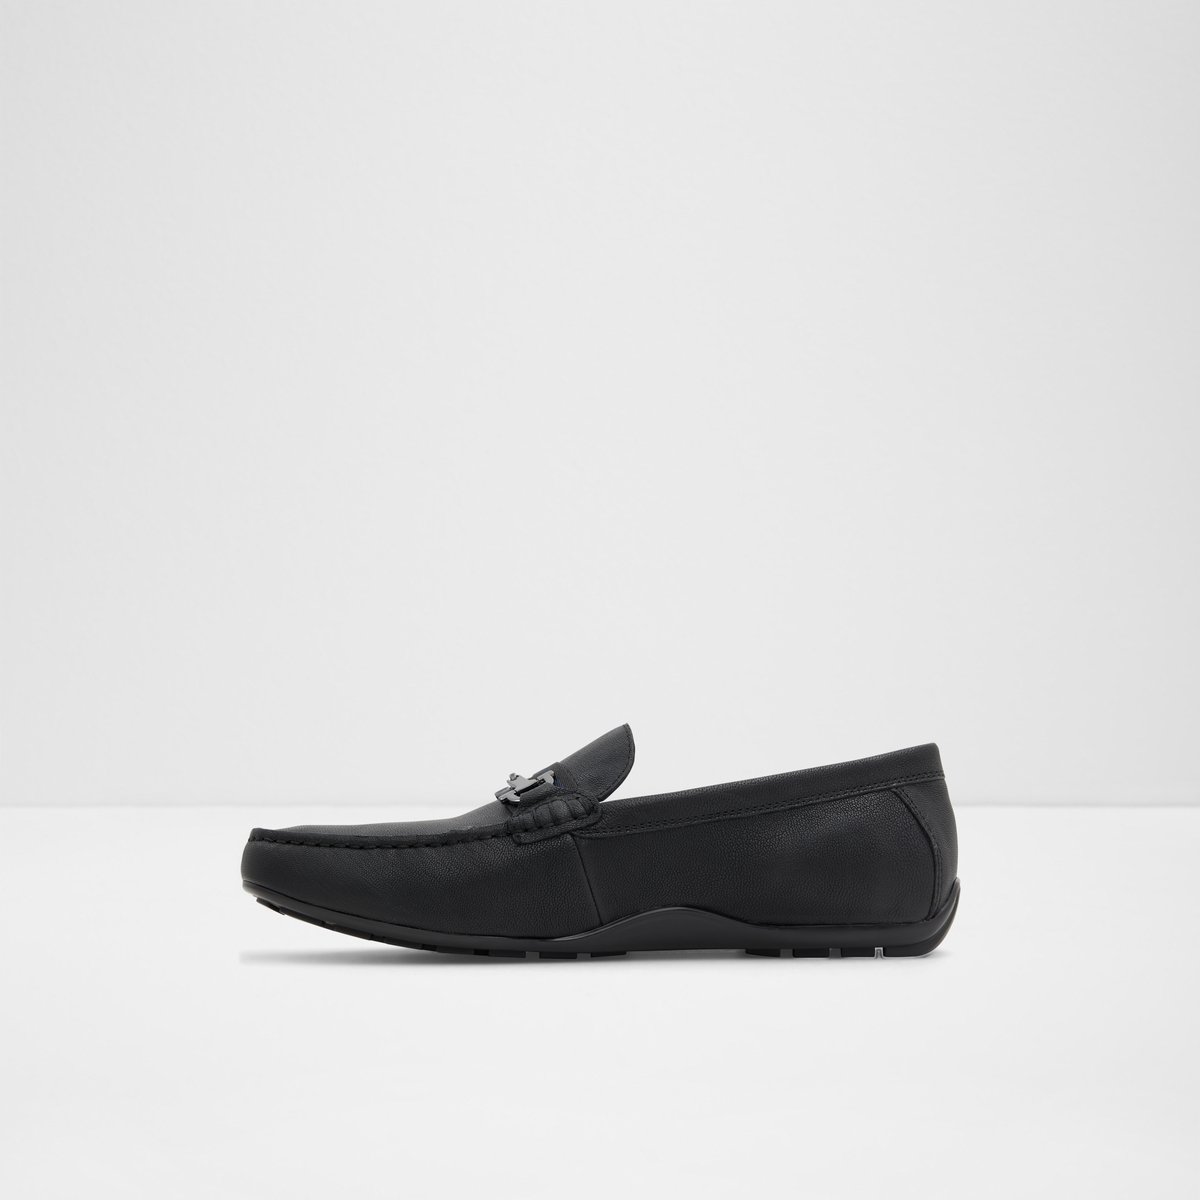 ALDO Men Shoes Flat Shoes Casual Shoes Mens Casual Shoe Black Fangio Size 7 